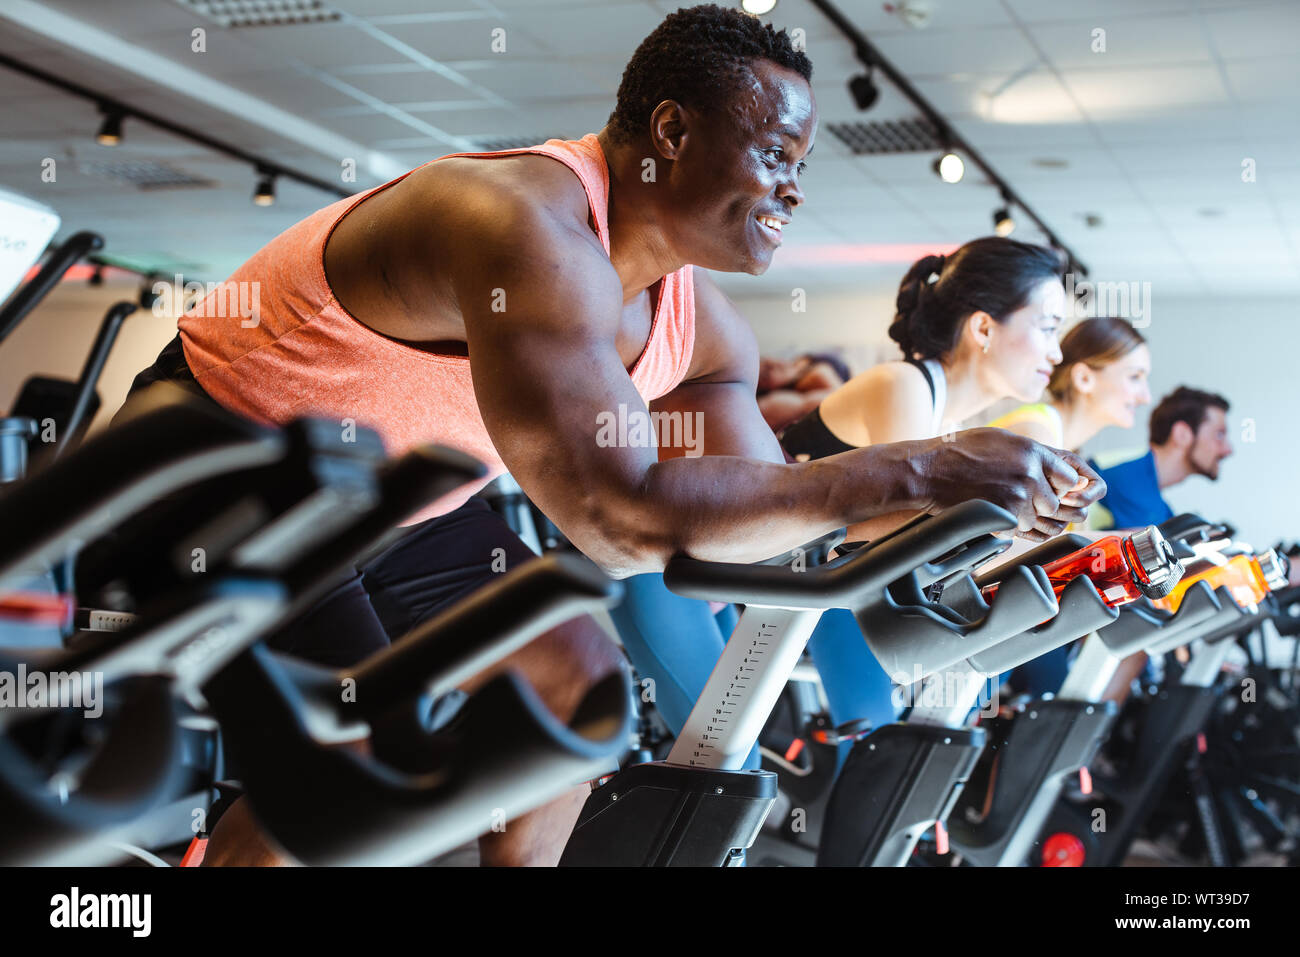 Afrikanischer Mann und Freunden auf dem Fahrrad im Fitnessstudio Fitness  Stockfotografie - Alamy